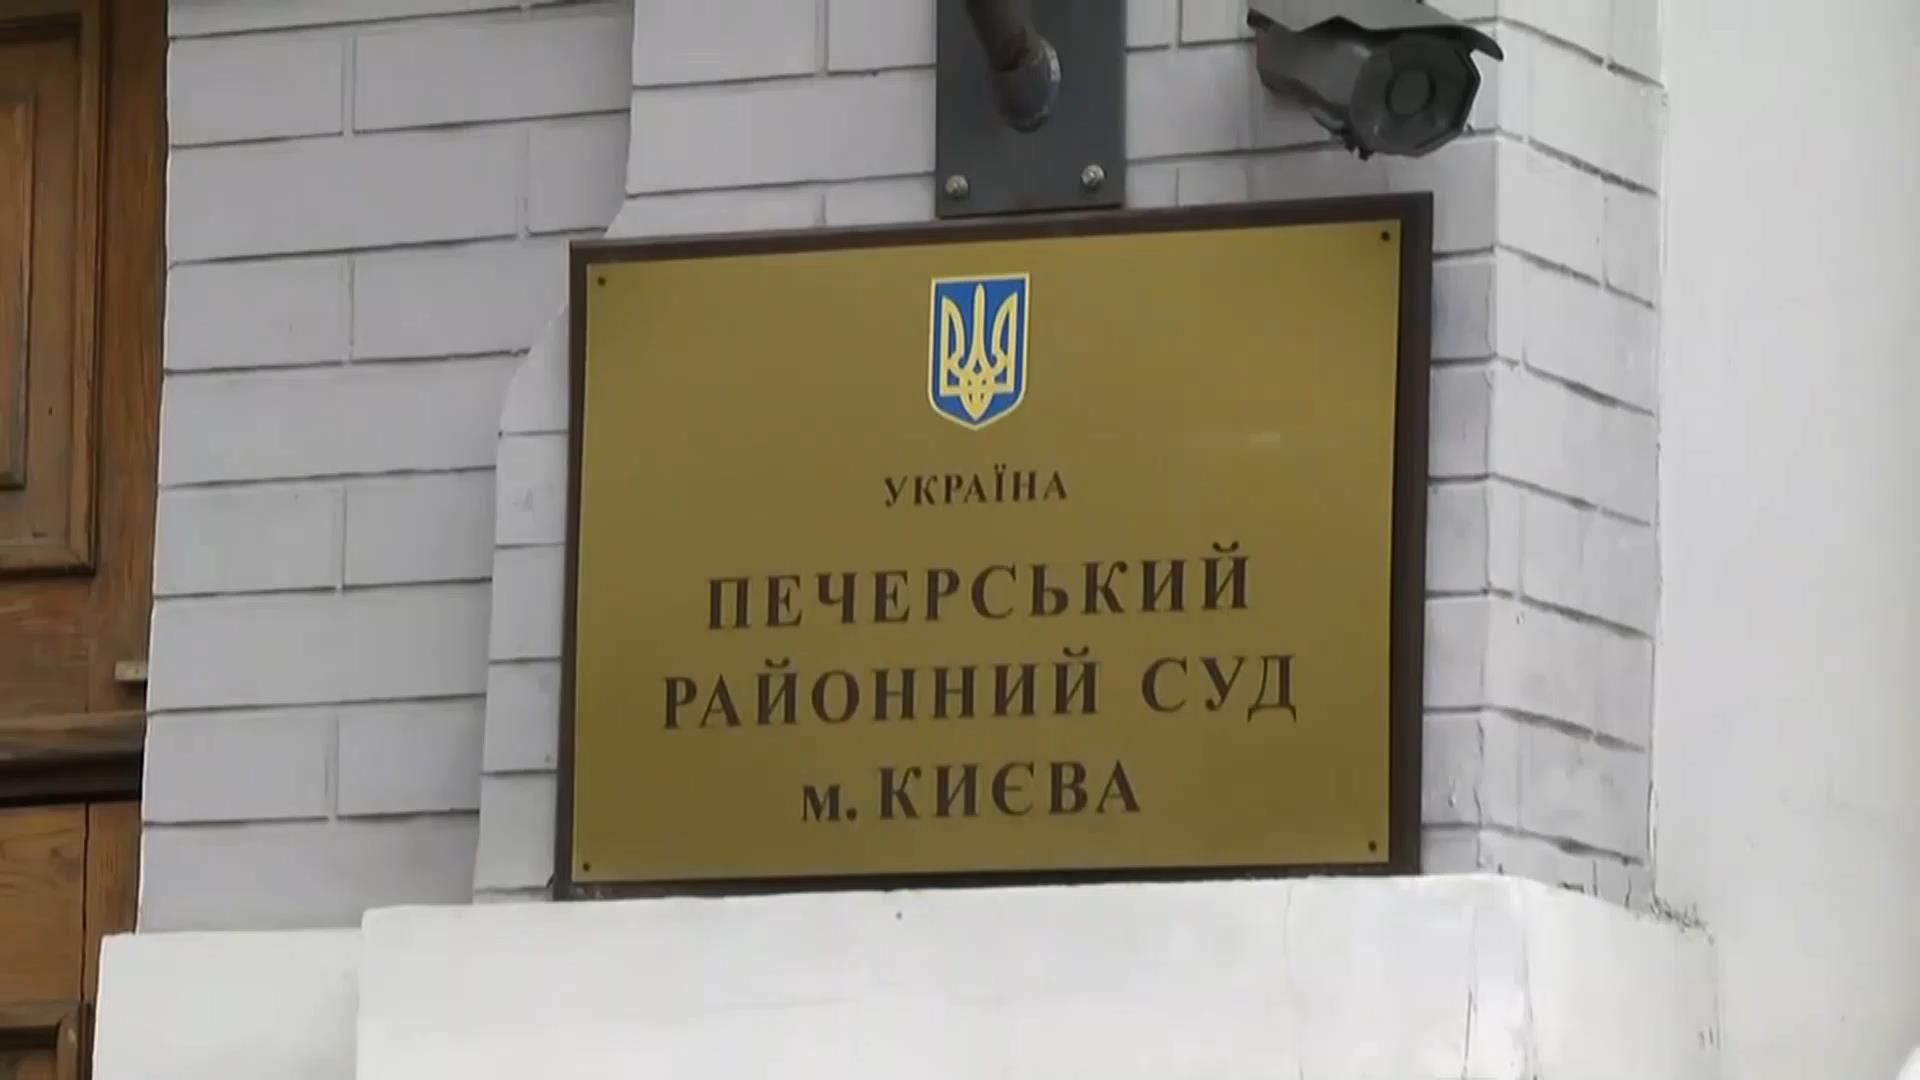 Мэру Вышгорода избирают меру пресечения